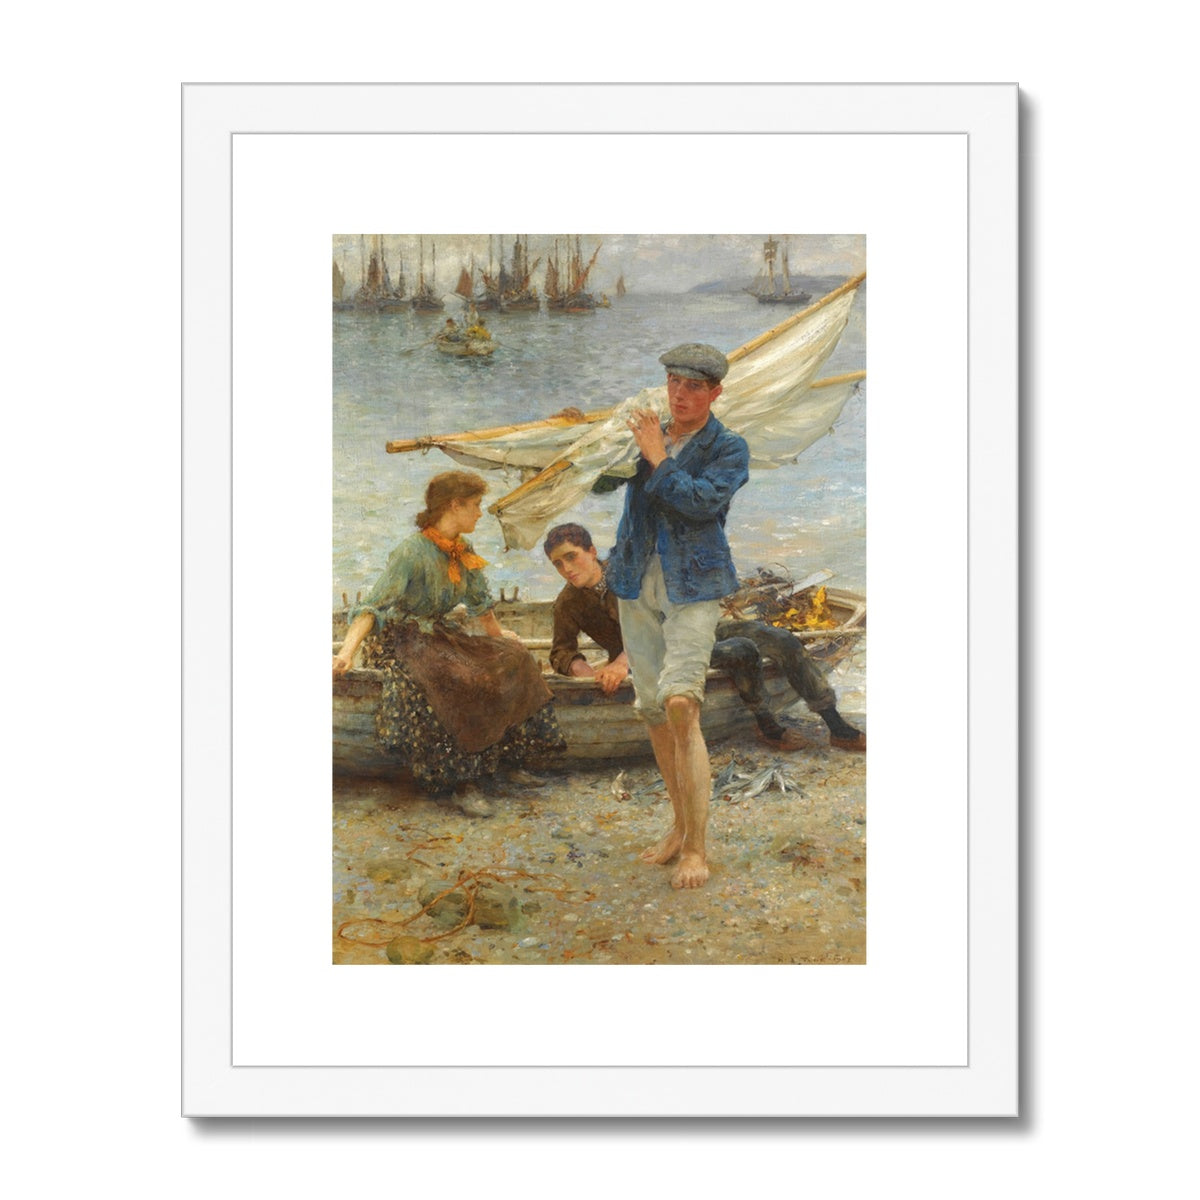 Return from Fishing by Henry Scott Tuke. Framed Open Edition Fine Art Print. Historic Art